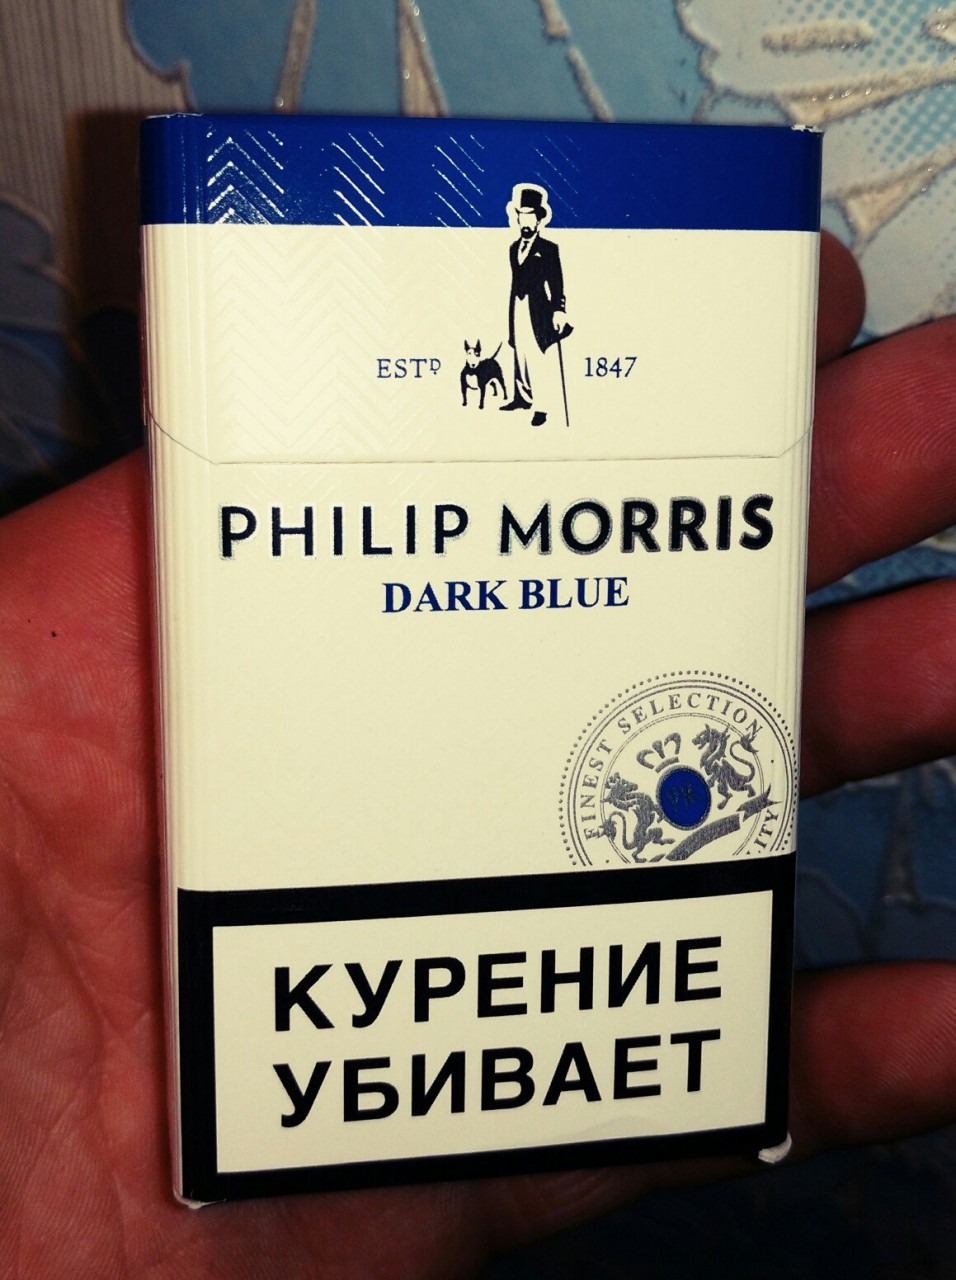 Филлип моррис отзывы. Сигареты Филип Моррис синий. Филип Морис синяя пачка. Сигареты Филип Моррис синяя пачка.